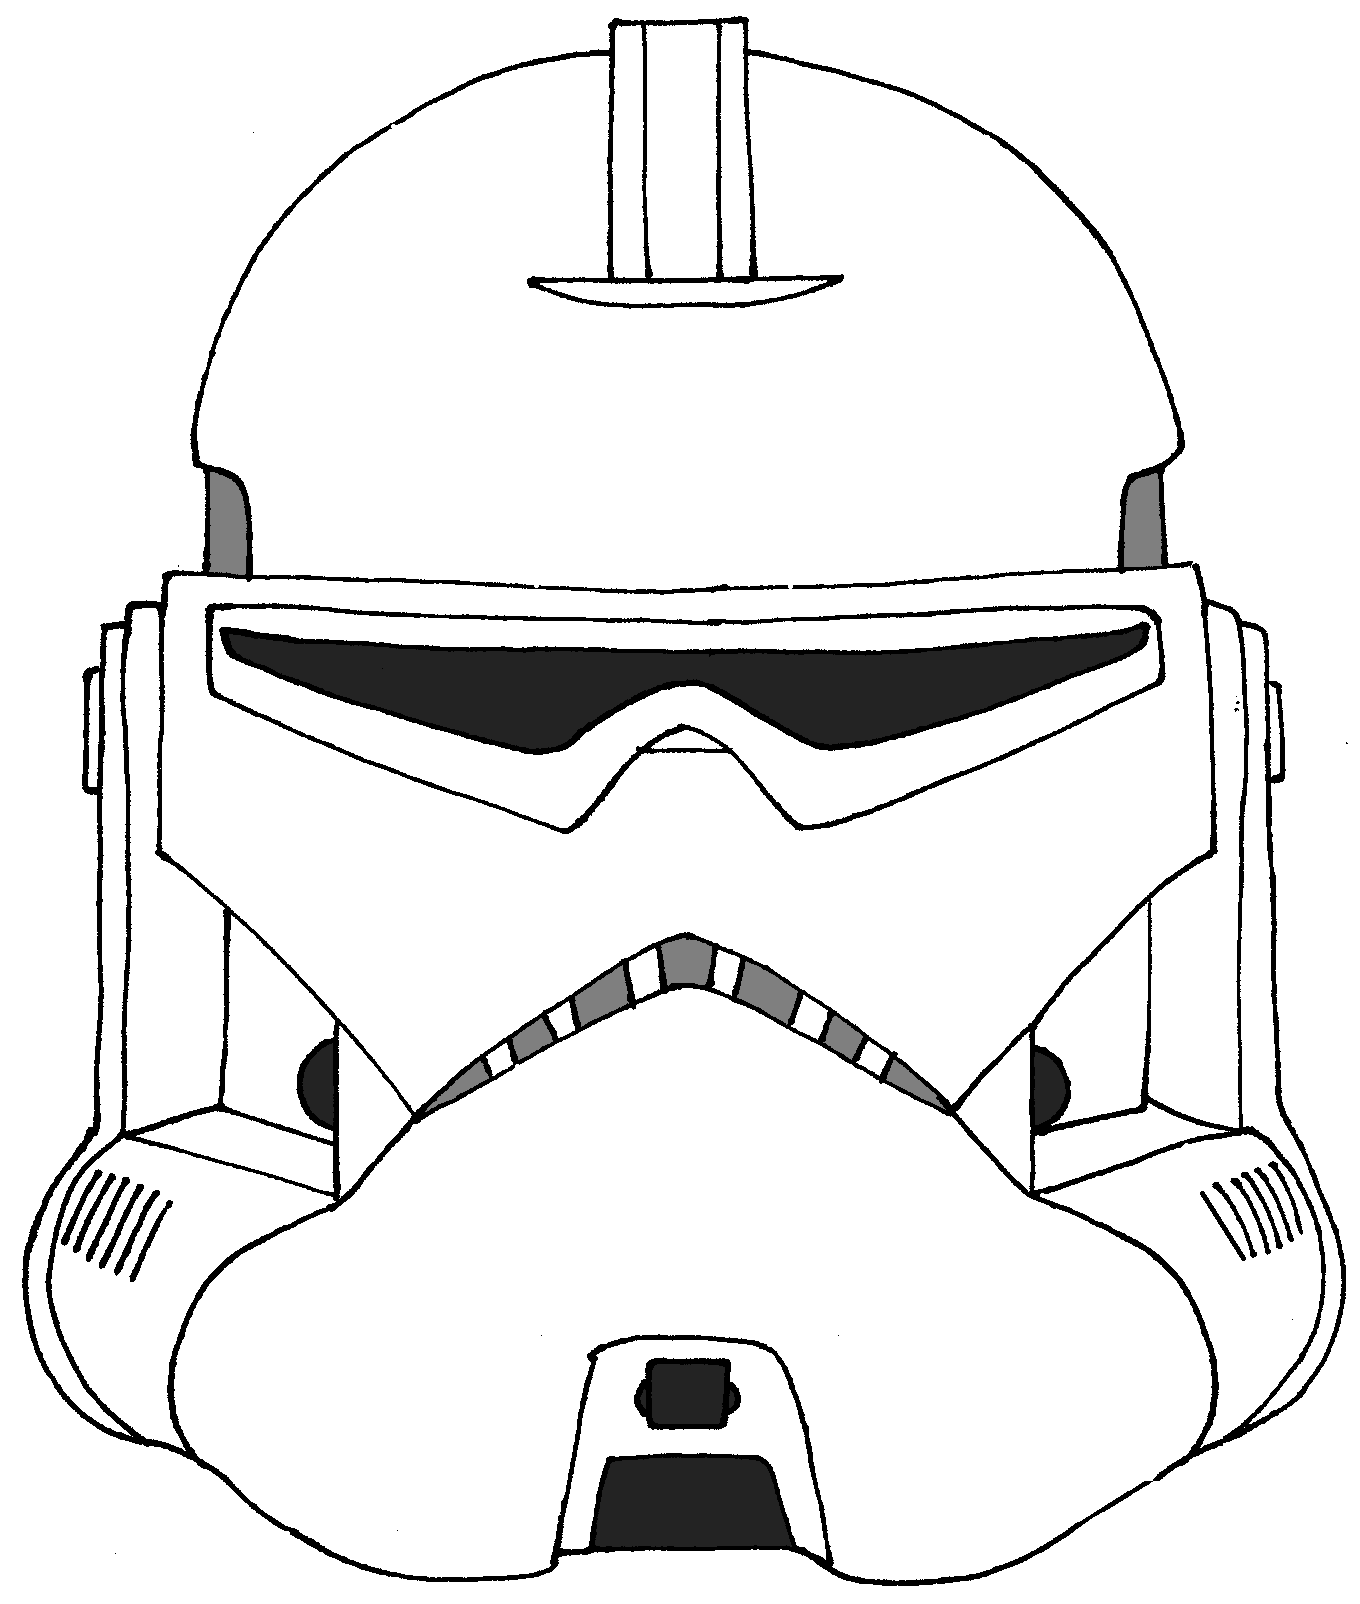 Clone trooper barc trooper helmet star wars helmet star wars clone wars star wars drawings